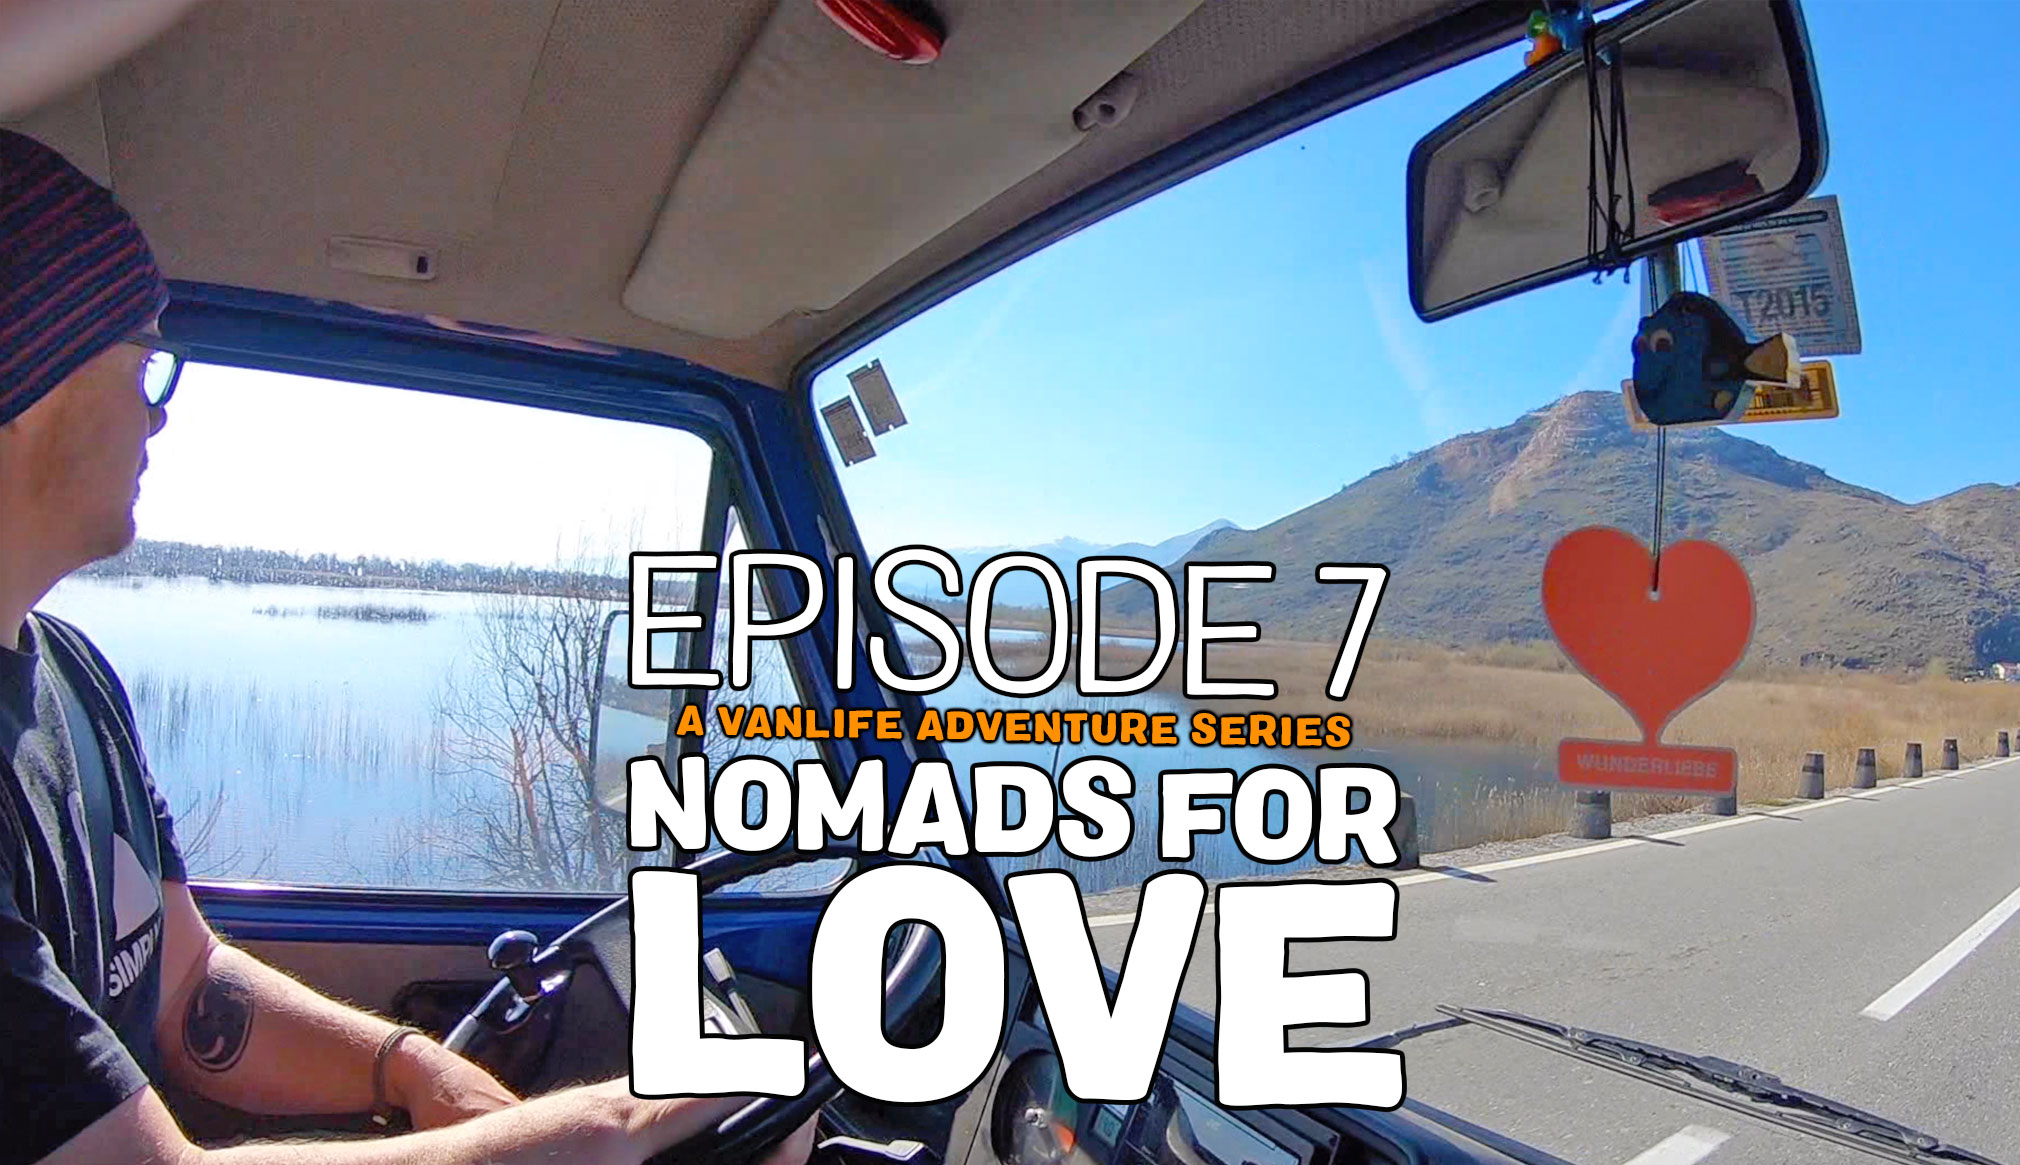 nomads for love episode 7